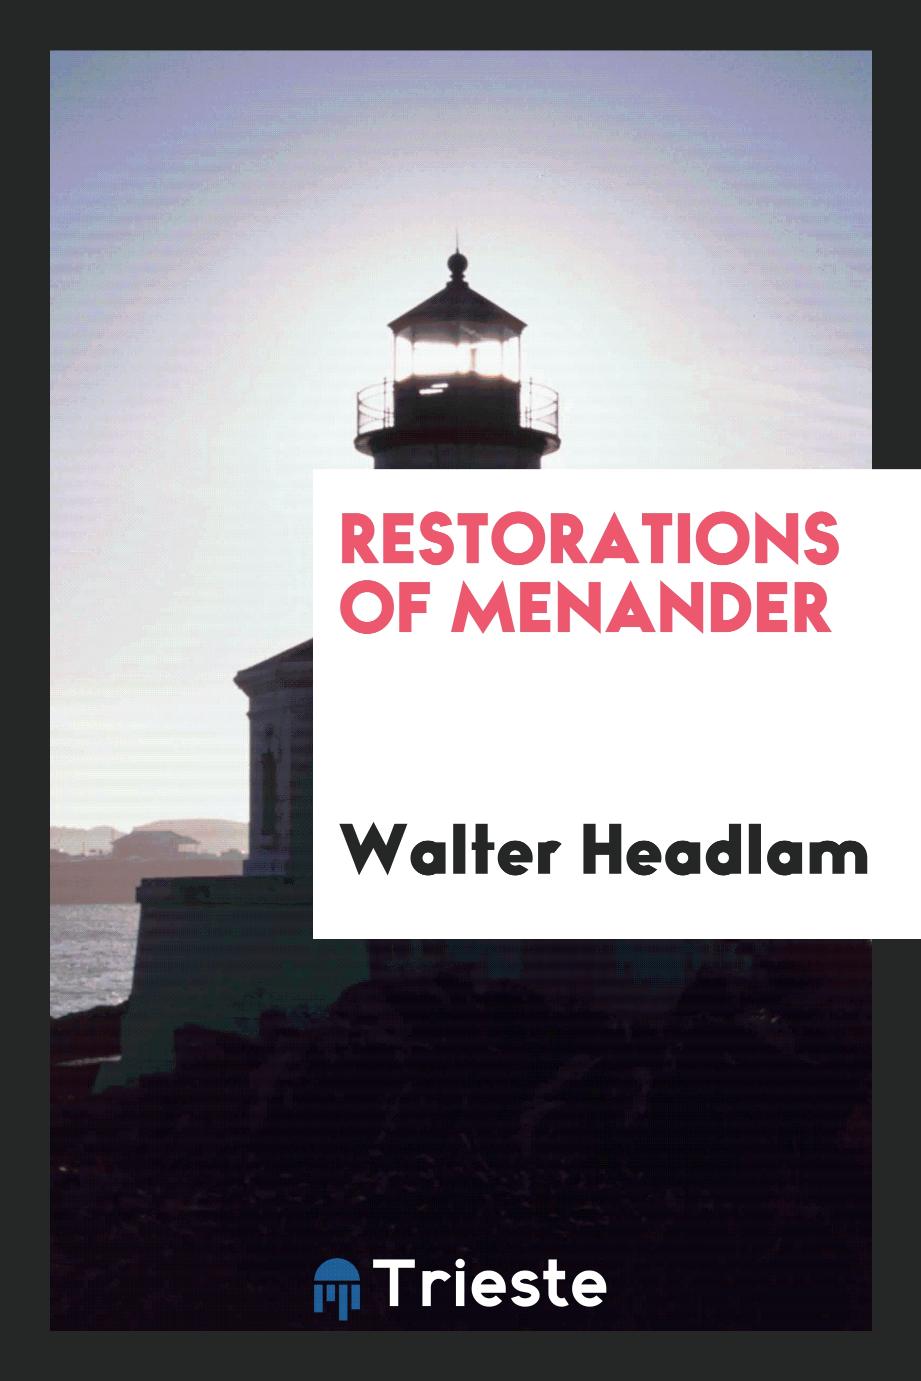 Walter Headlam - Restorations of Menander